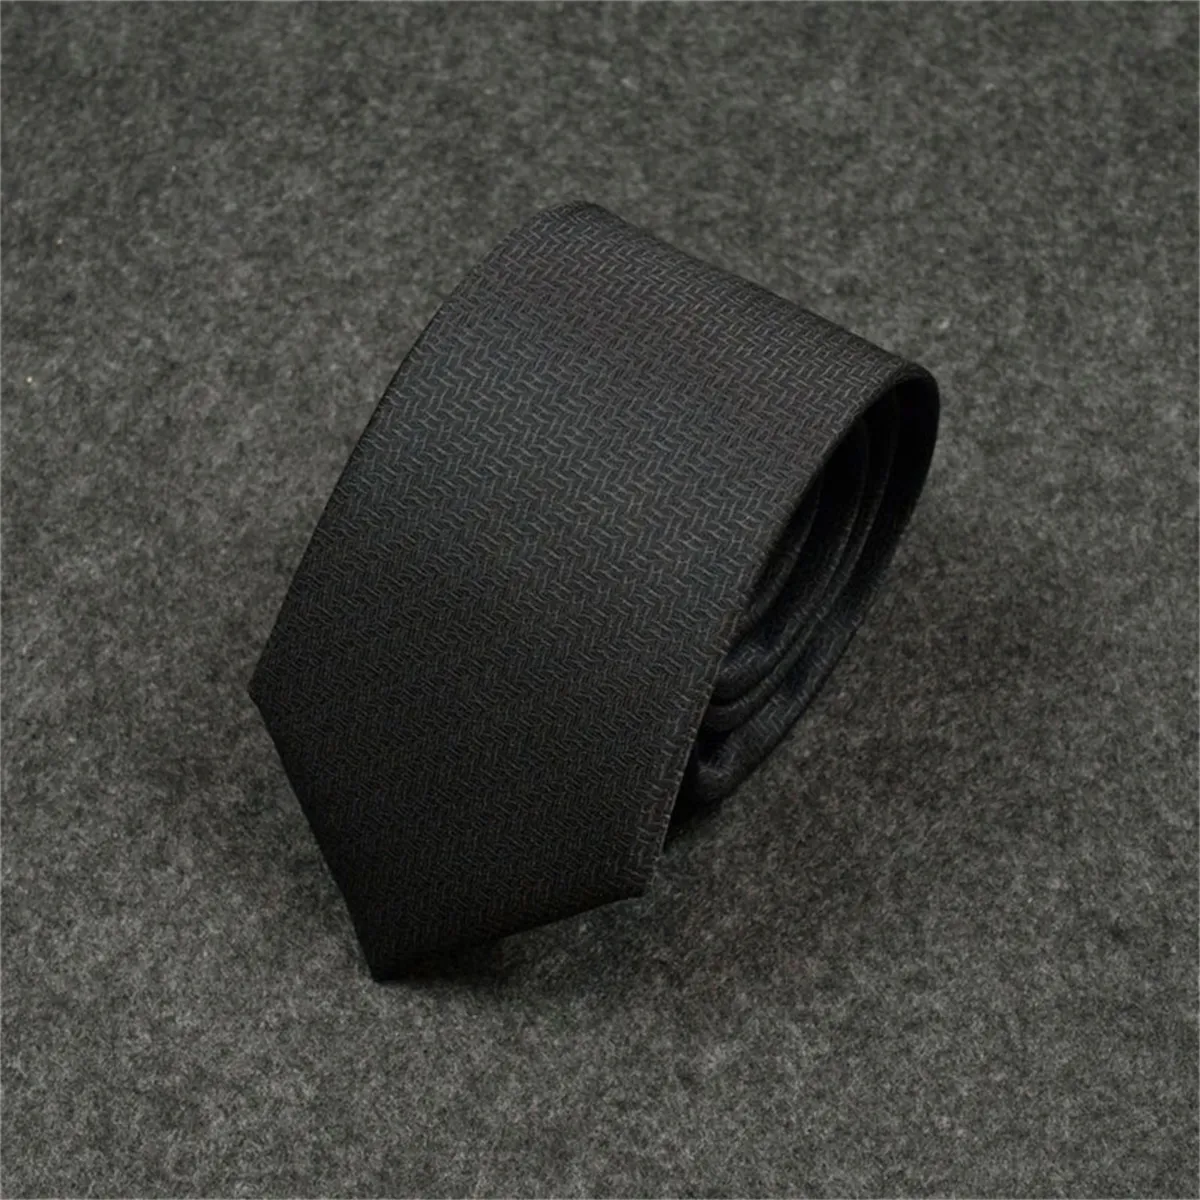 H2023 New Men Ties Fashion Silk Tie 100 ٪ Designer Necktie Jacquard الكلاسيكية المنسوجة المصنوعة يدويًا لحفل الزفاف غير الرسمي وبين الأعمال التجارية مع الصندوق الأصلي 6HH96